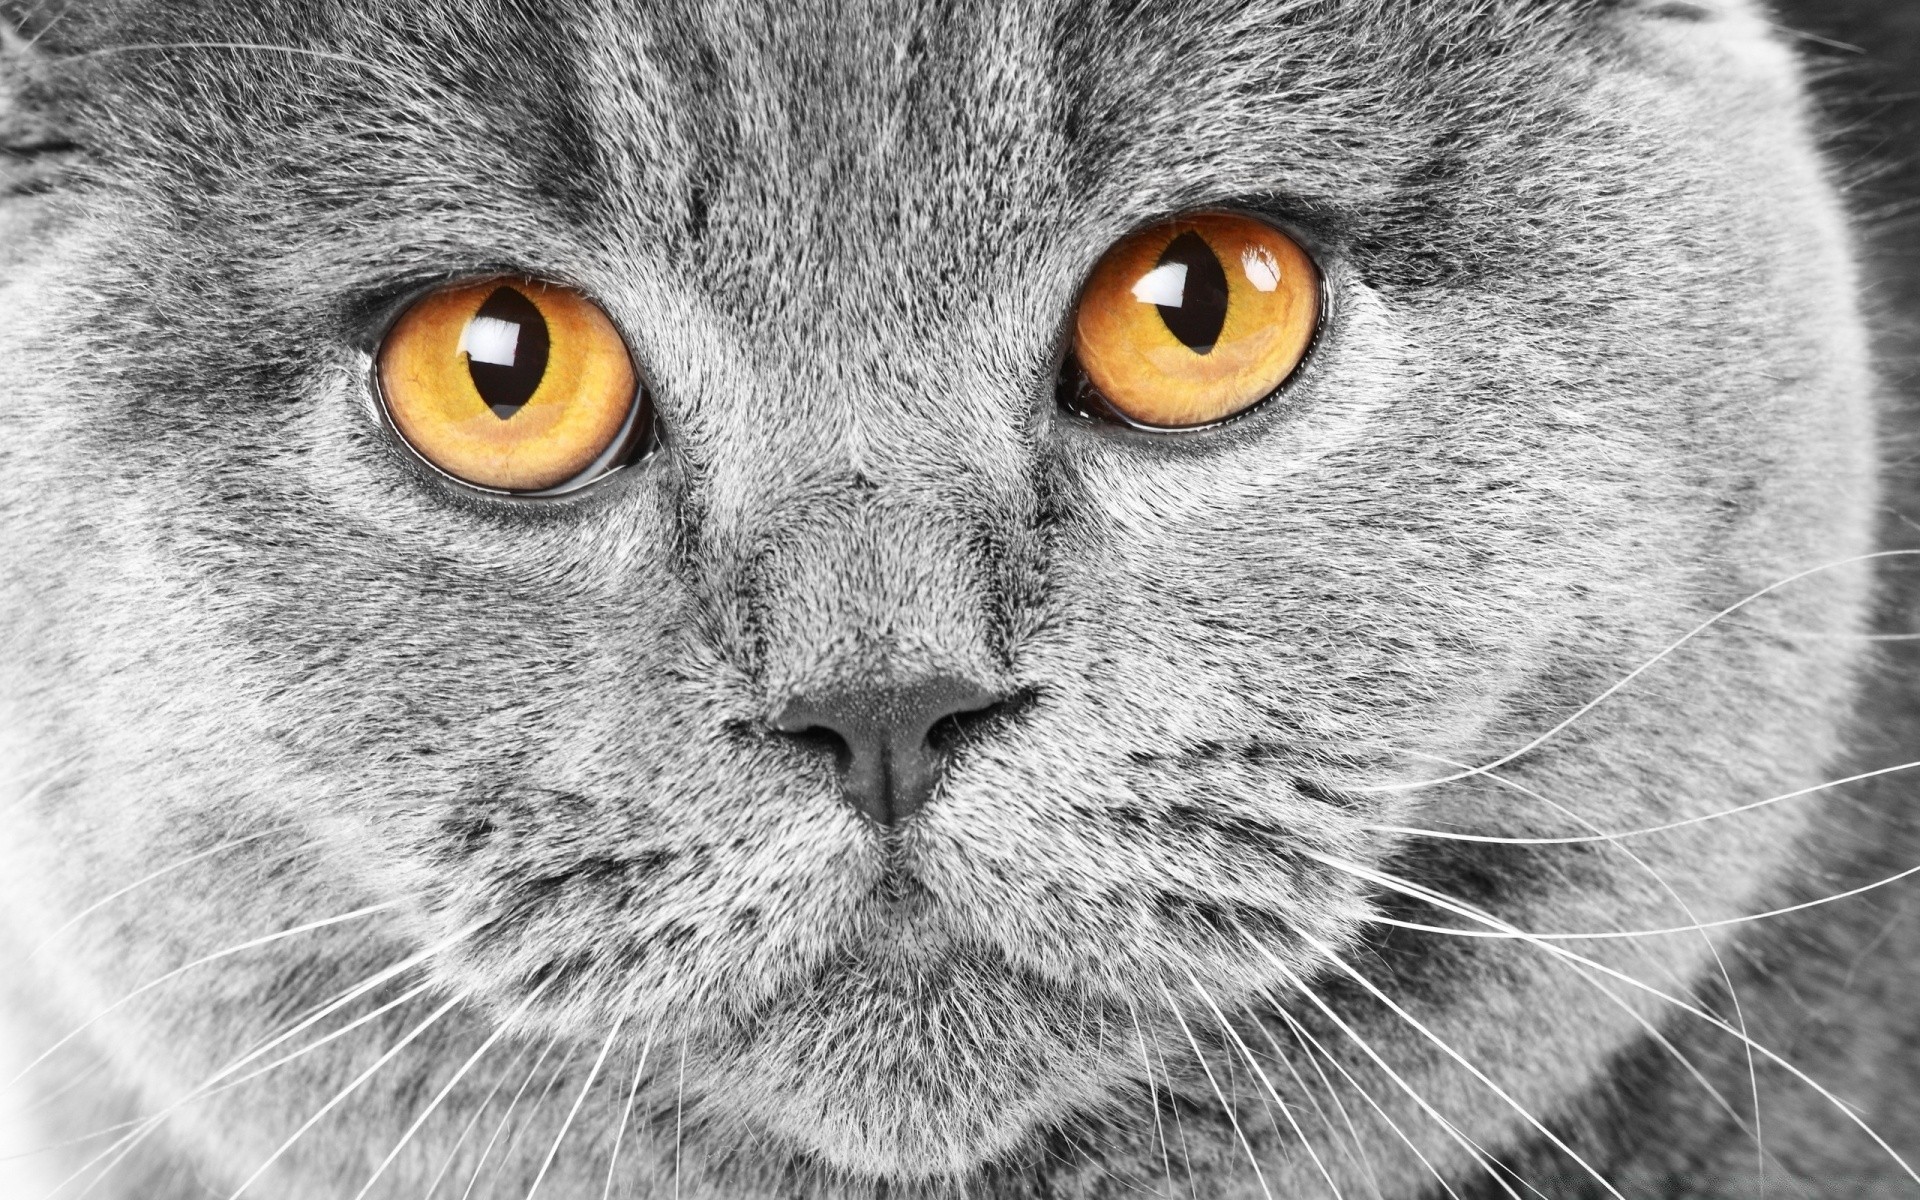 кошки кошка глаз портрет мех милые животное серый природа млекопитающее волосы просмотр дикой природы ус пуховый пэт глядя котенок